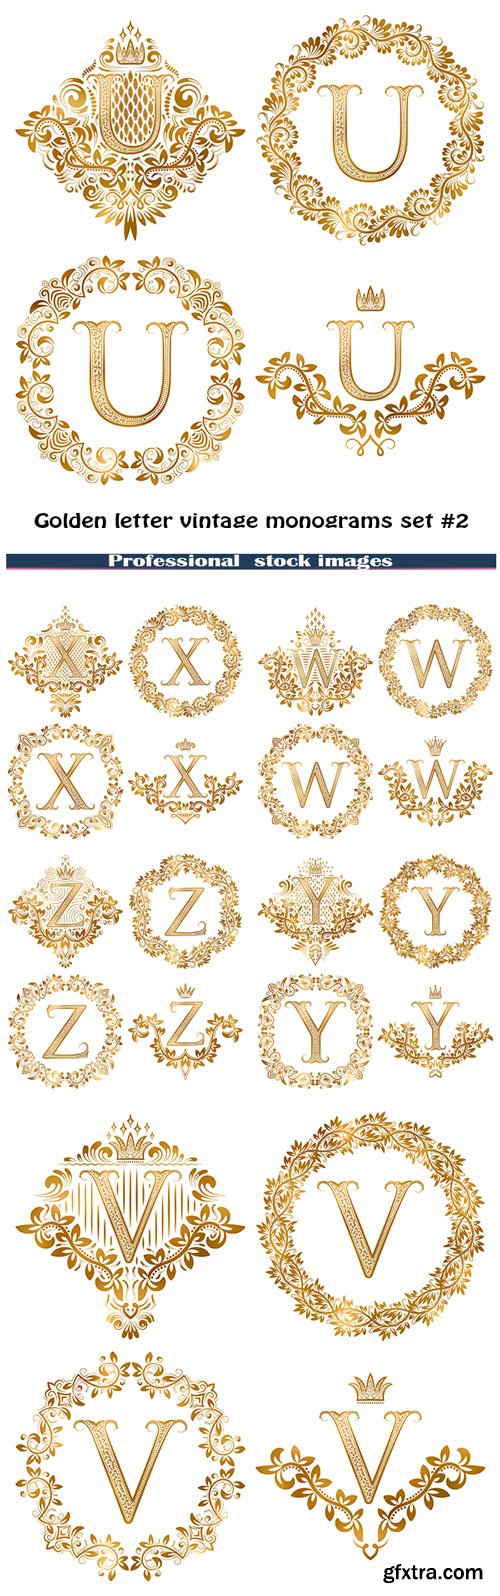 Golden letter vintage monograms set #2